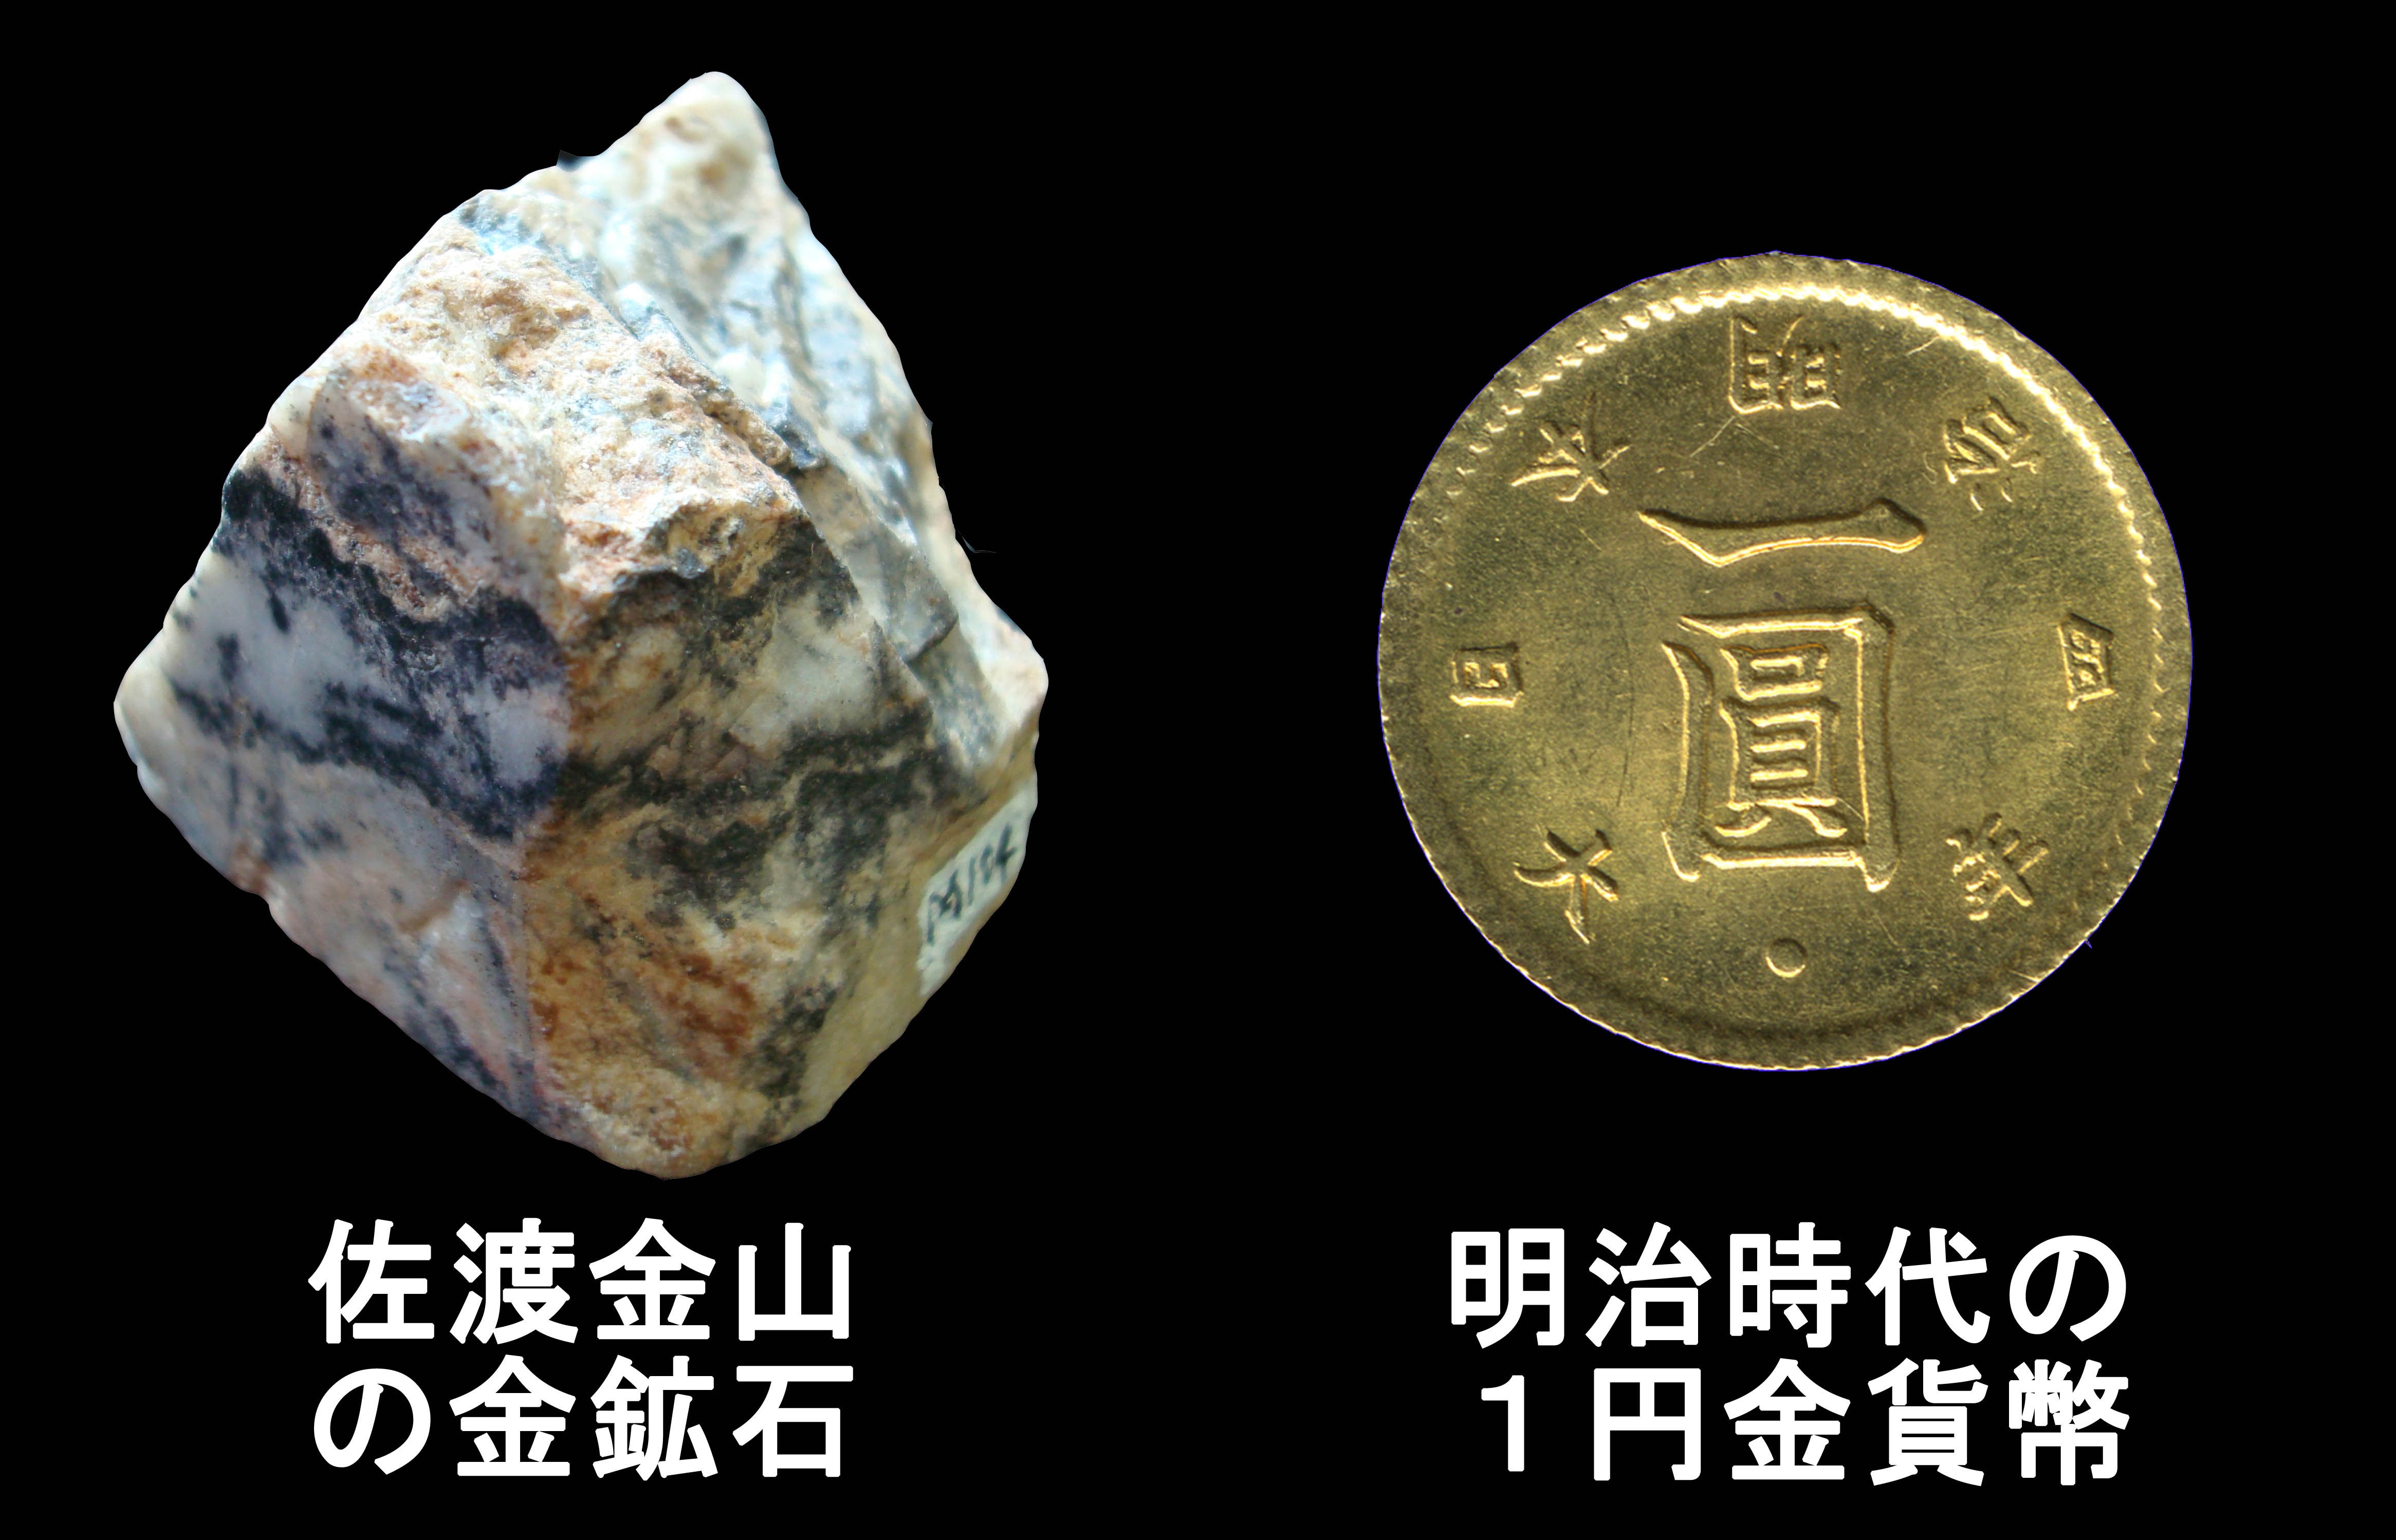 佐渡金山の金鉱石と明治時代の１円貨幣